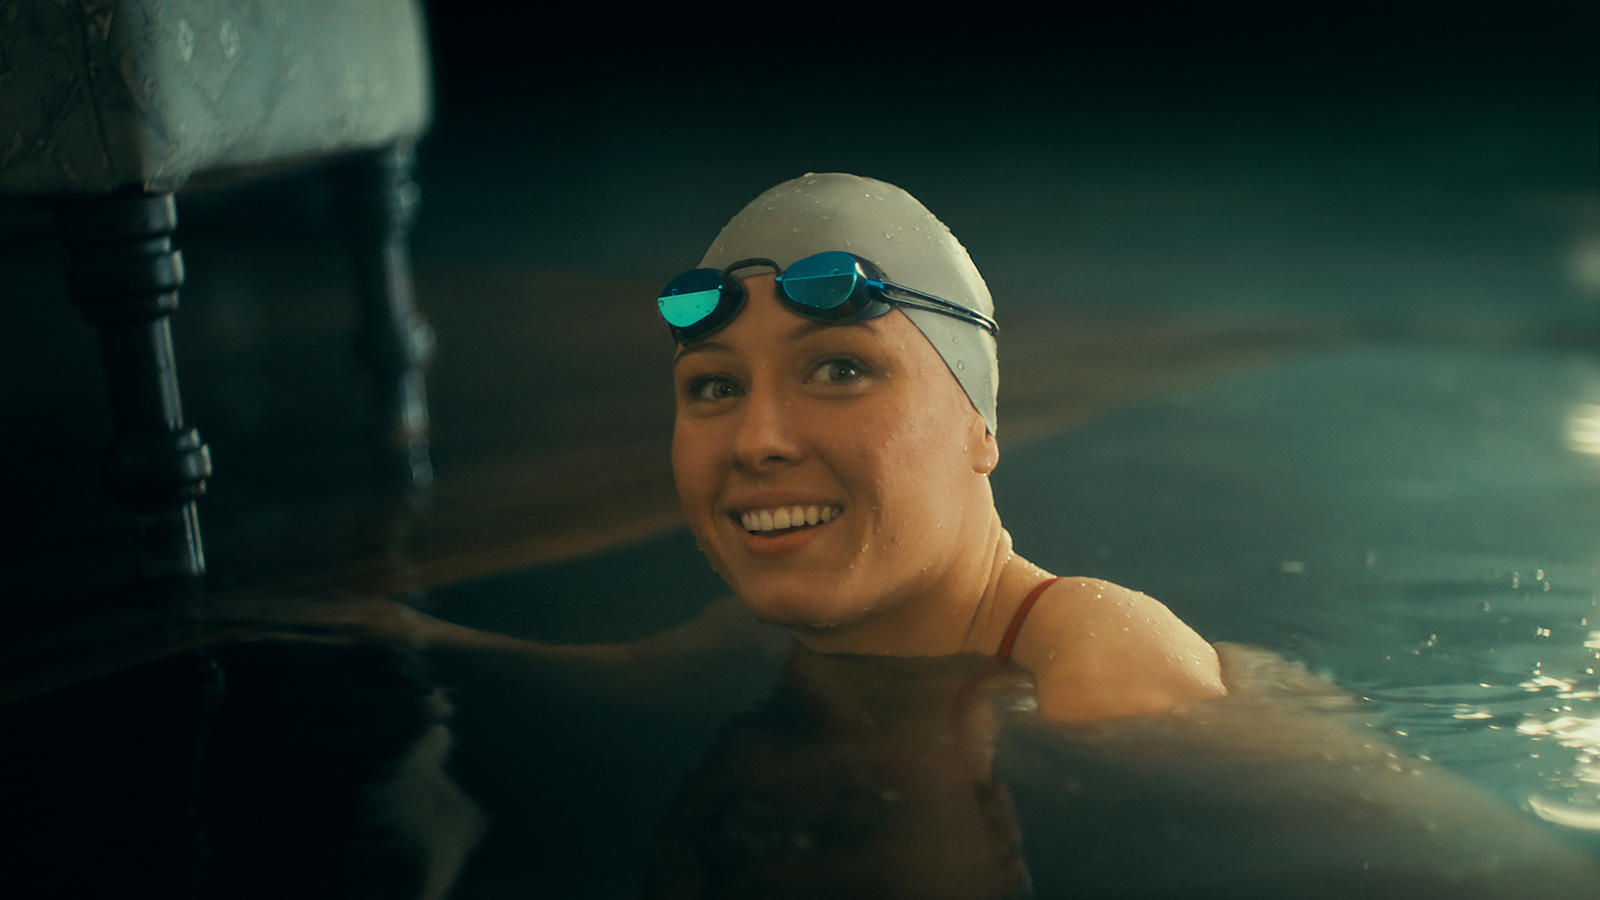 Вместо этого трогательный рекламный ролик рассказывает о непростом путешествии спортсменки команды Toyota Джессики Лонг. В 60-секундном ролике показано долгое плавание через важные сцены из ее жизни, в том числе момент, когда ее приемные родители пол